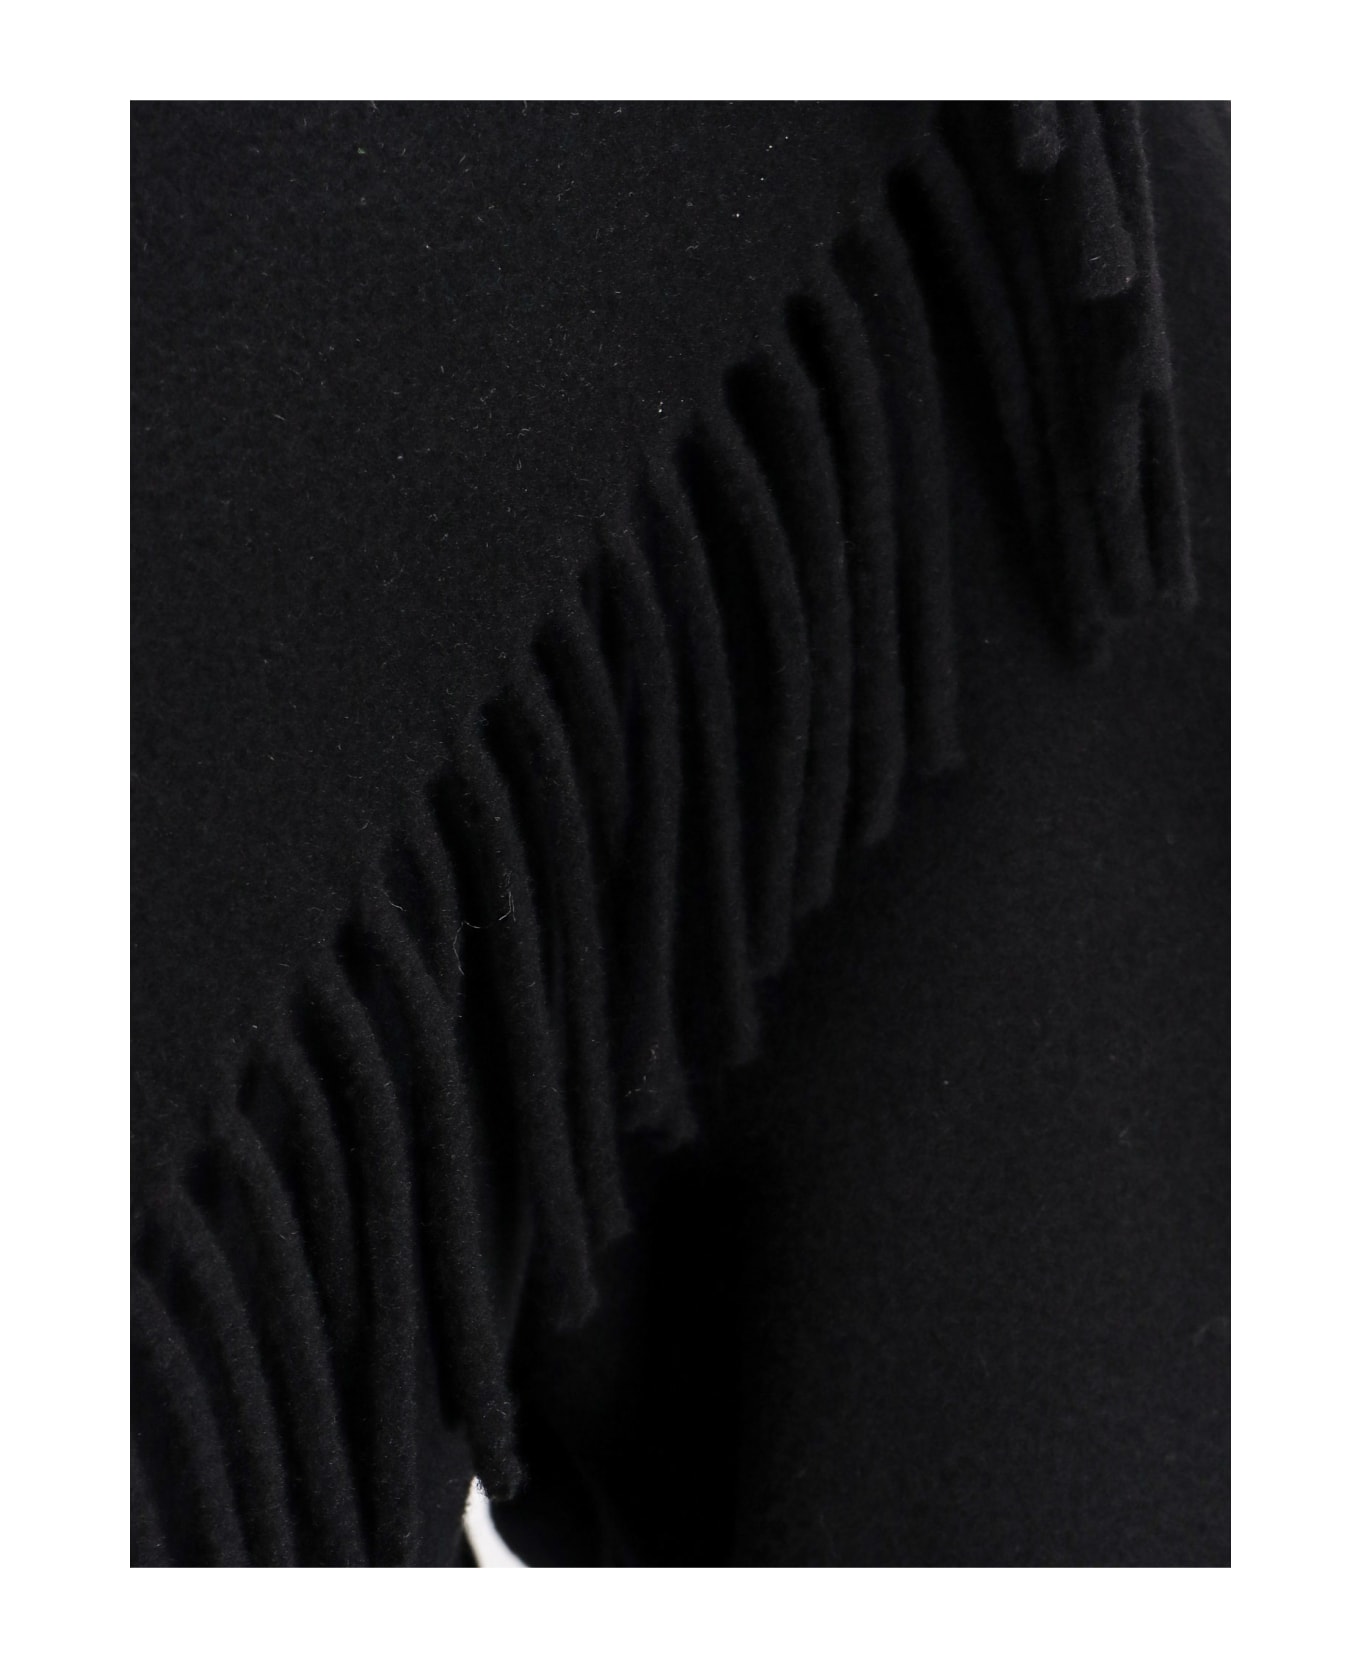 Balenciaga Coat - Black コート